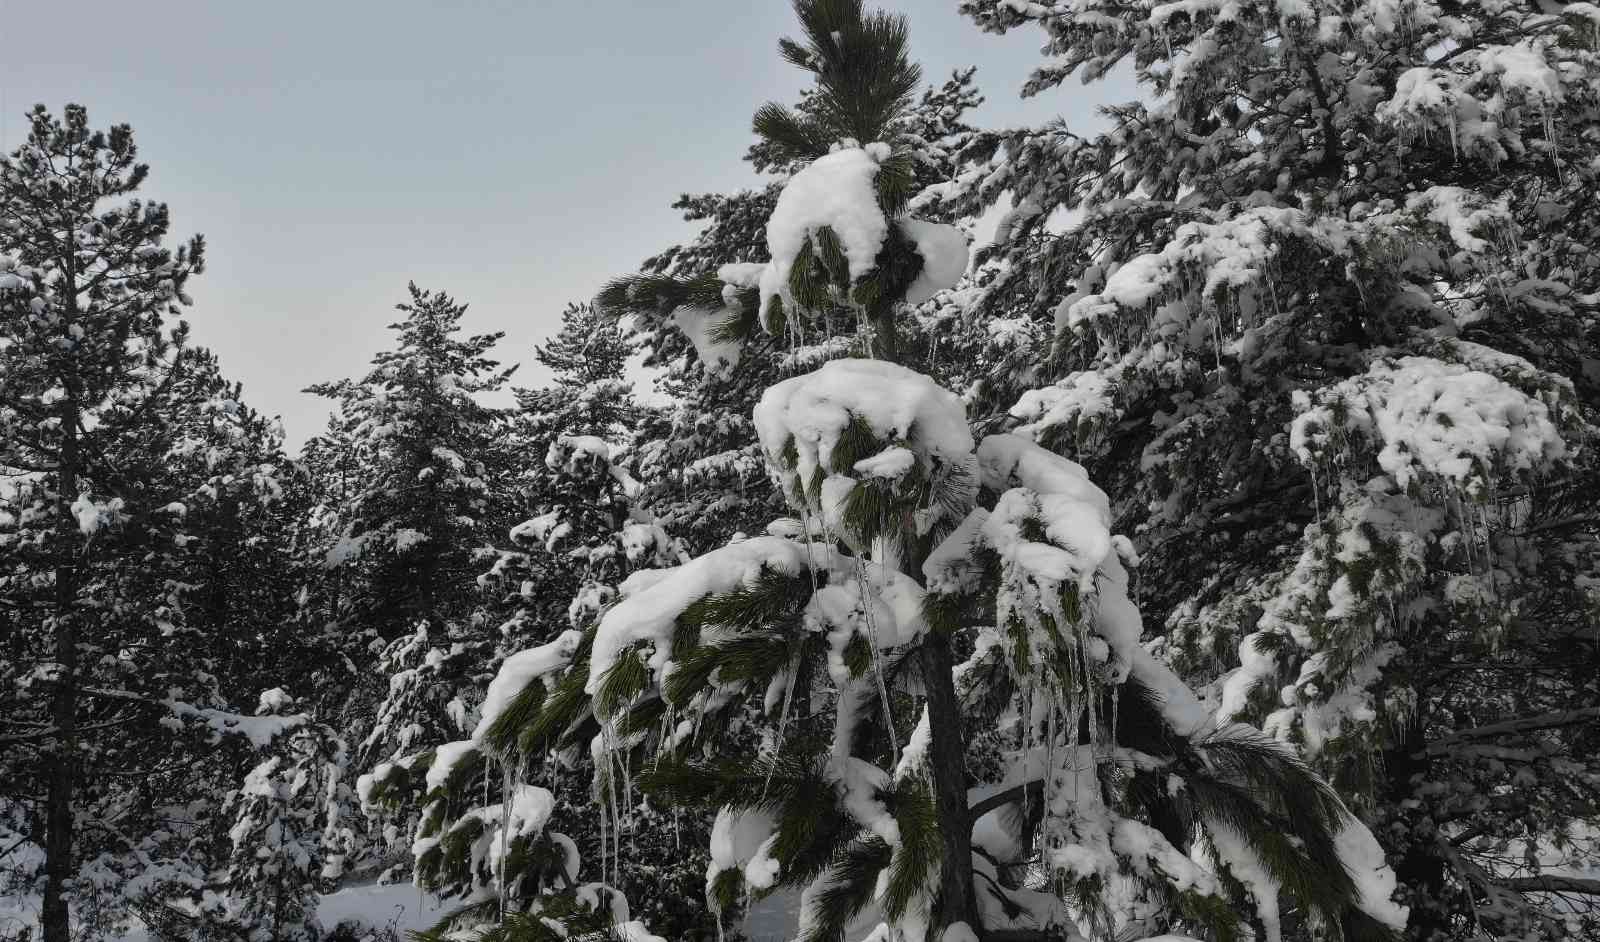 Kütahya’da karlı ve buzlu çam ağaçları ilginç görüntüler oluşturdu #kutahya